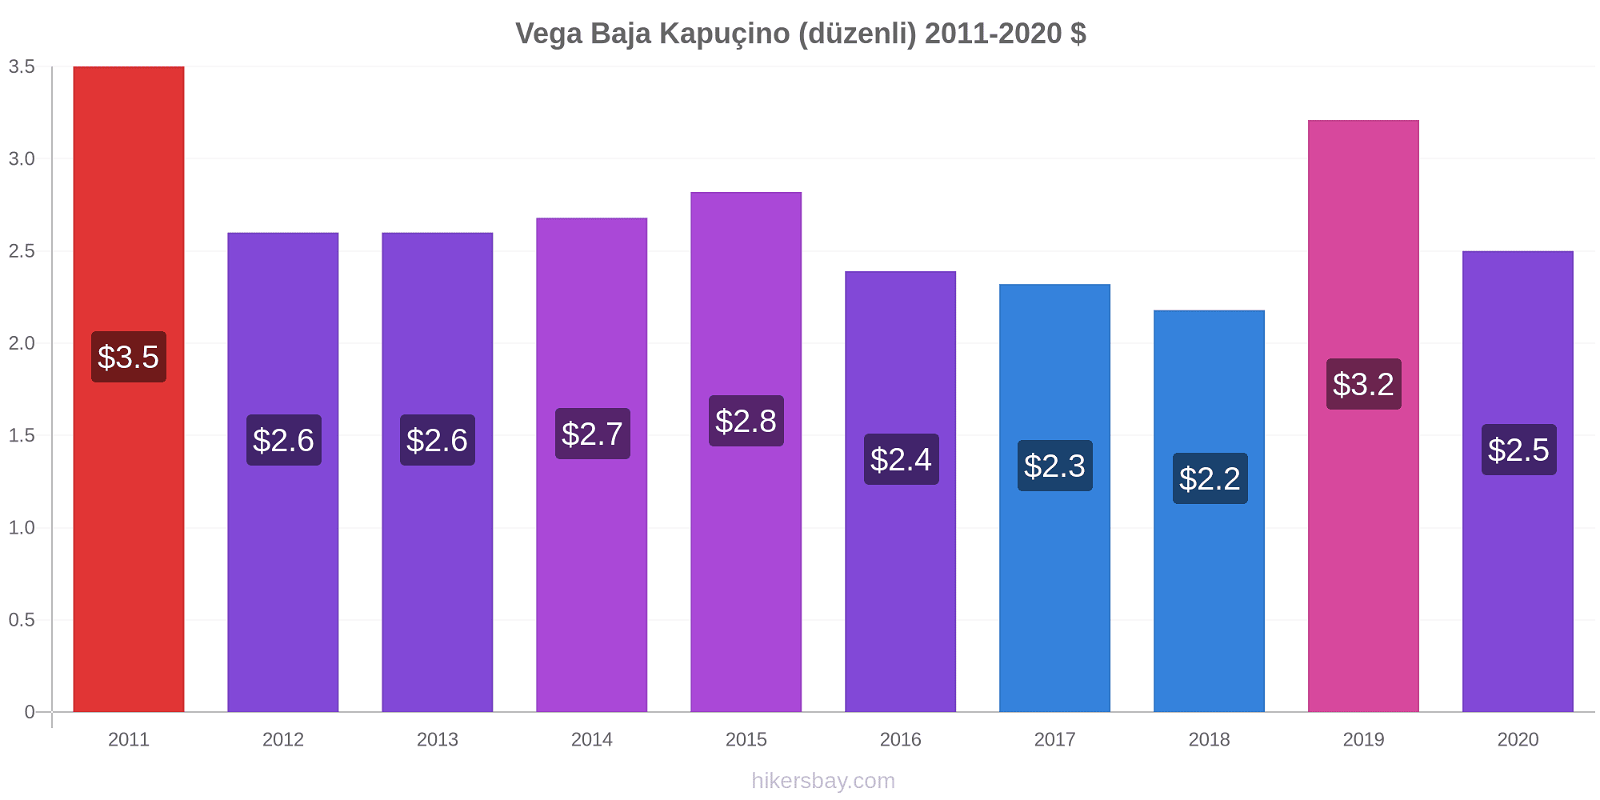 Vega Baja fiyat değişiklikleri Kapuçino (düzenli) hikersbay.com